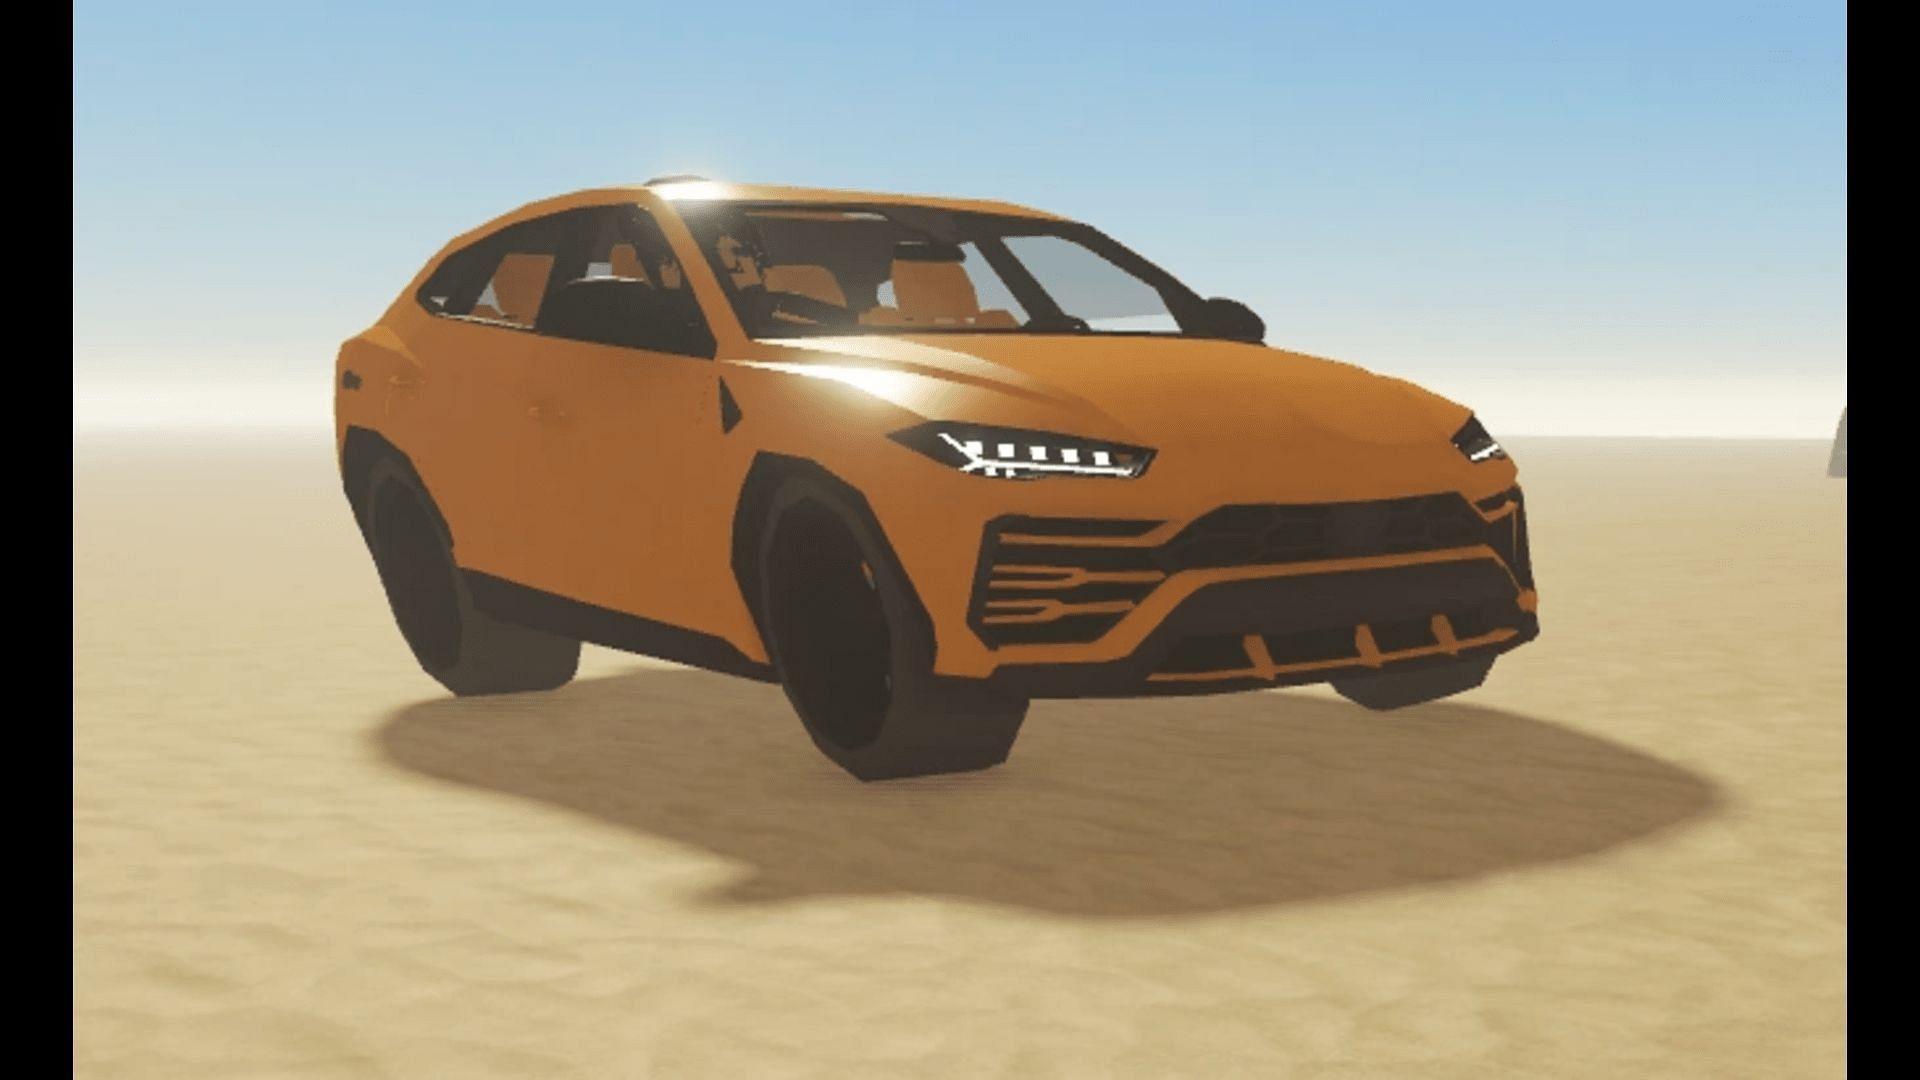 The Exotica based on Lamborghini Urus in A Dusty Trip (Image via Roblox)